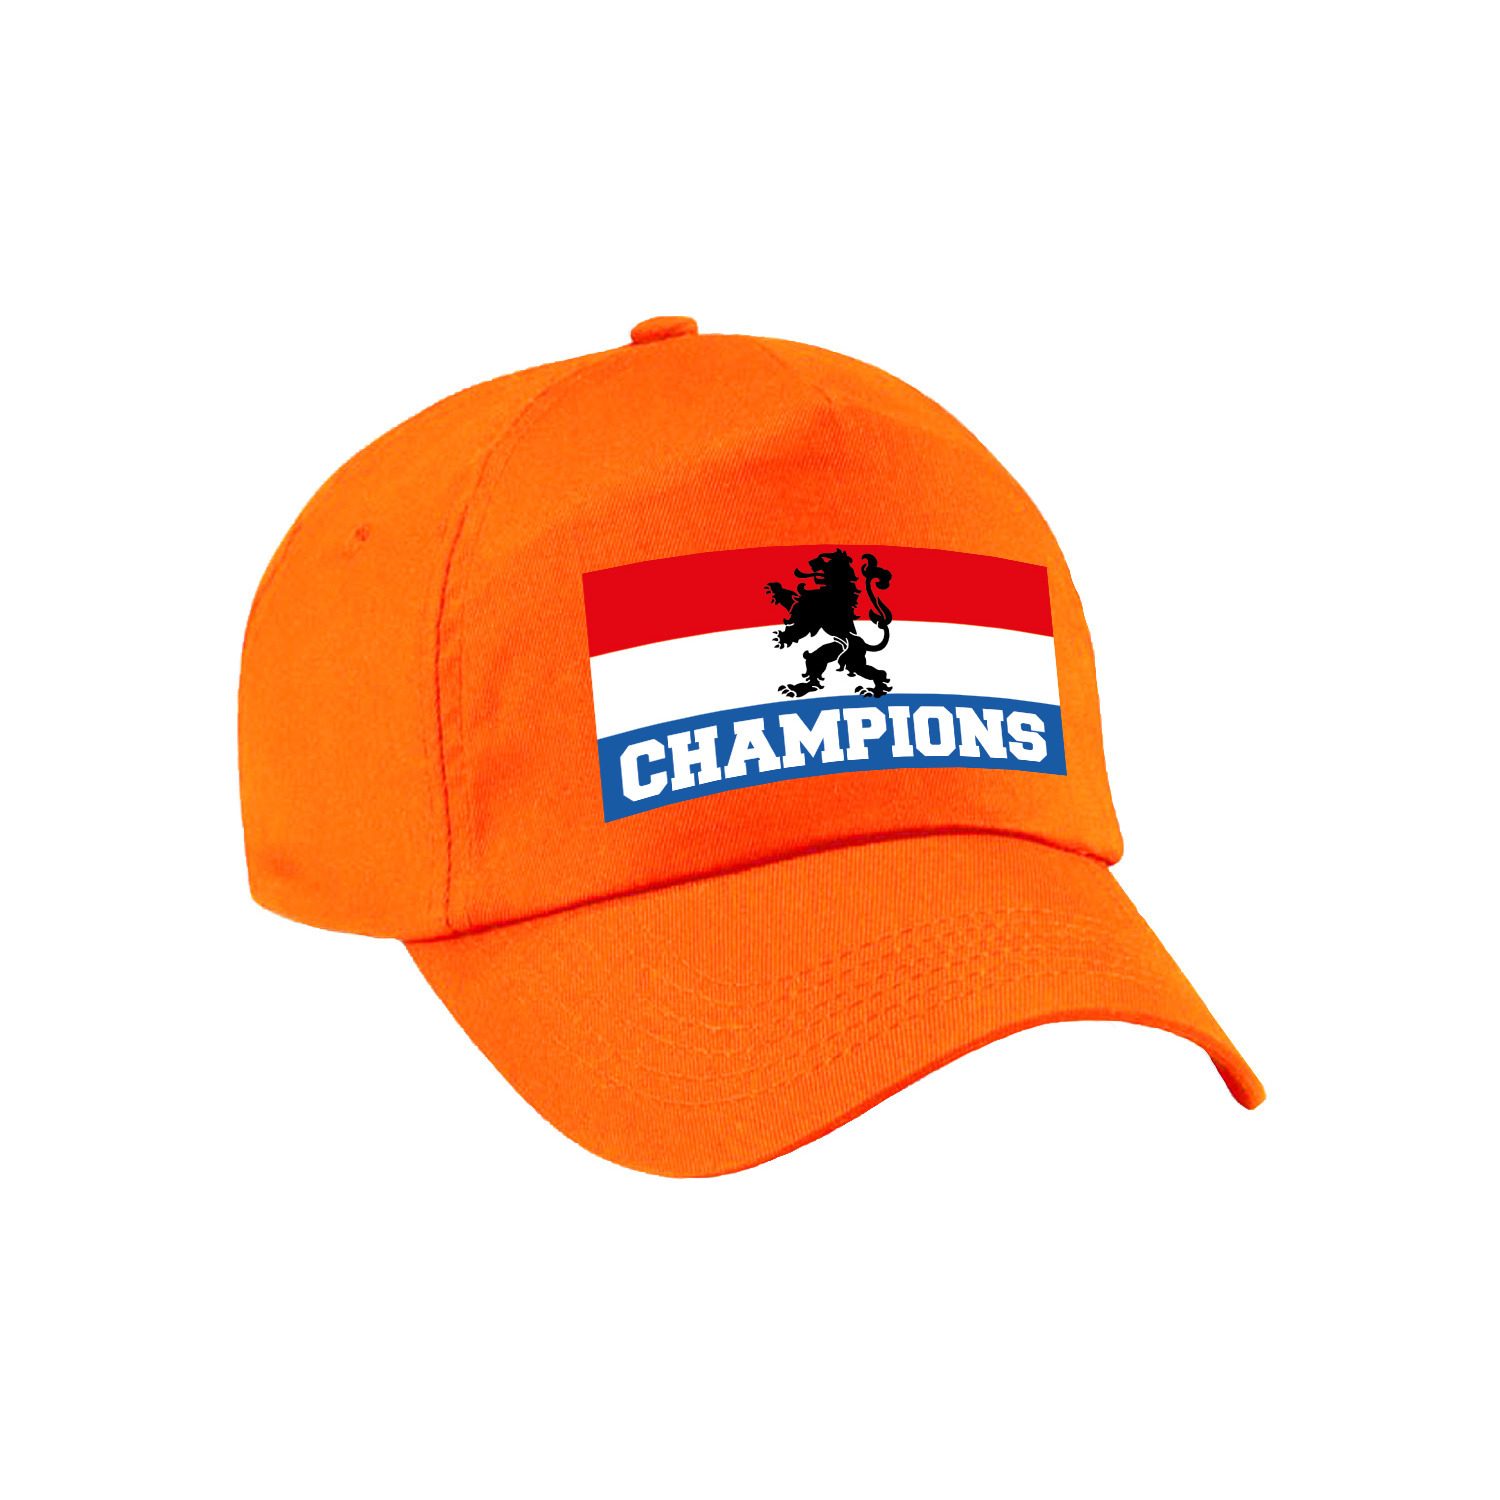 Nederland supporter pet - cap champions met vlag Holland - EK - WK voor volwassenen